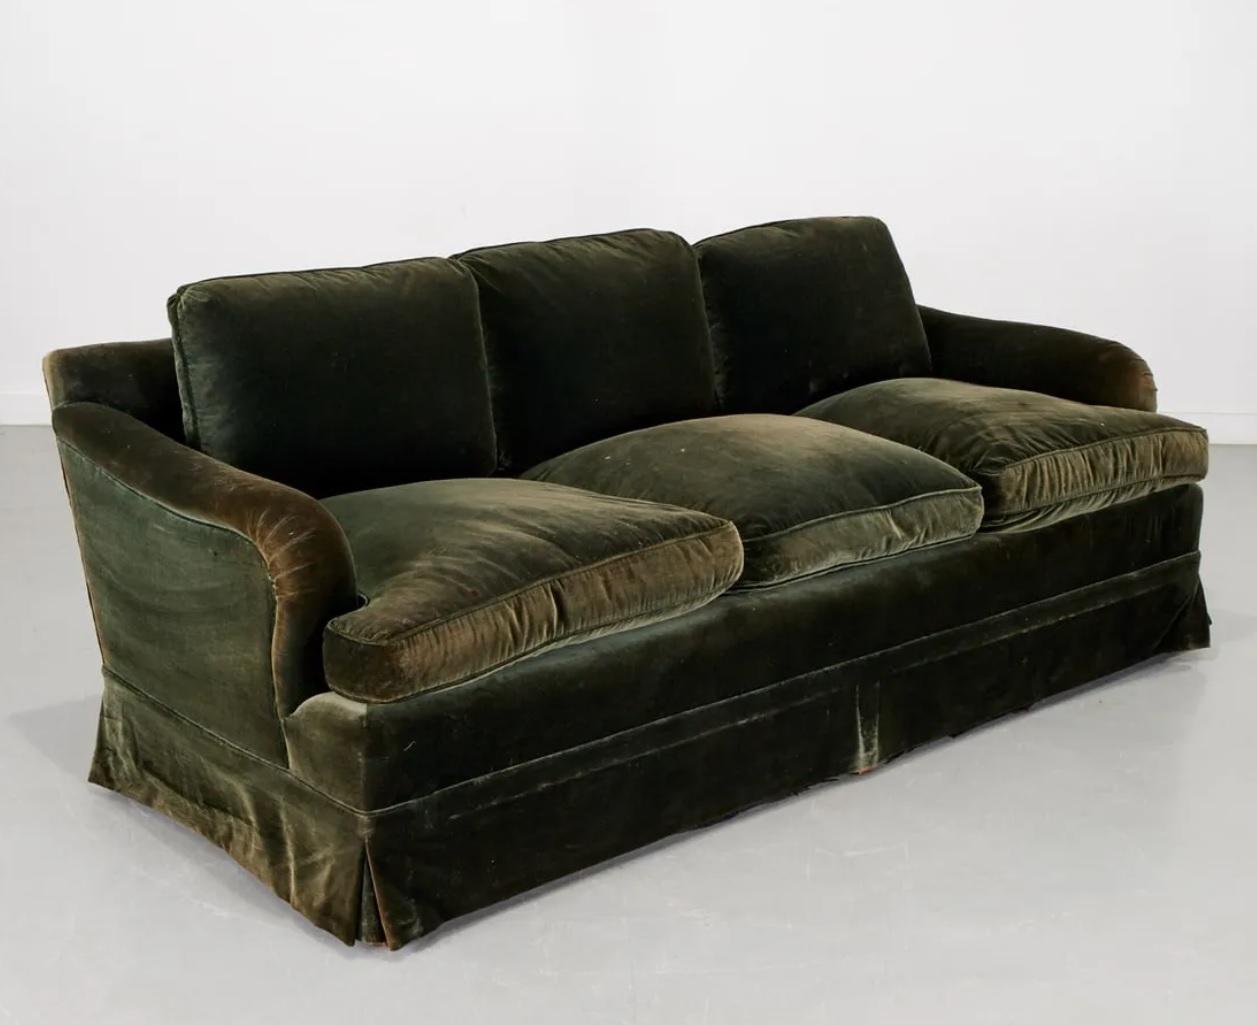 Canapé 3 places à accoudoirs en velours vert mousse du 20e siècle, fabriqué sur mesure en Angleterre. Pieds en bois, état tel que montré. 